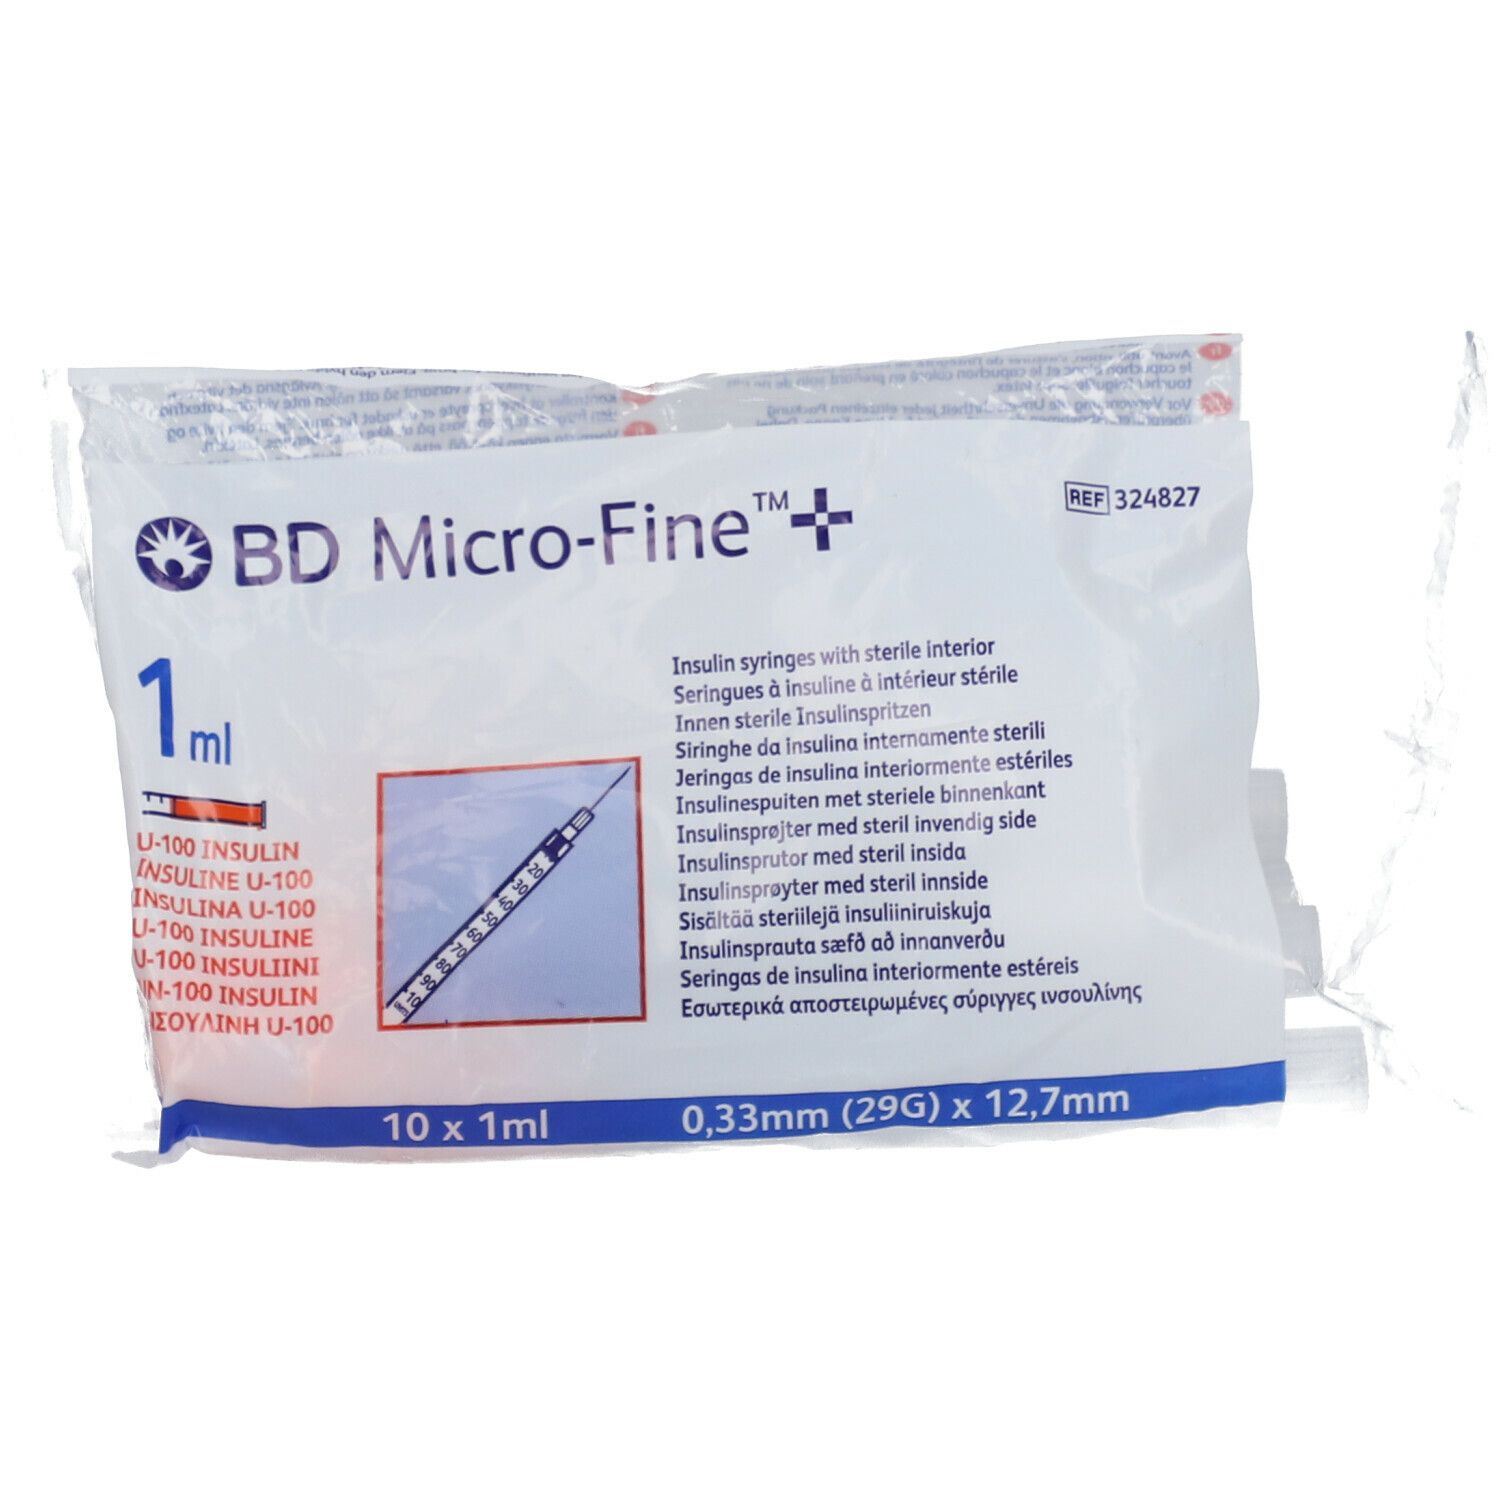 BD Micro-Fine™ +  1ml 29 g 12.7 mm